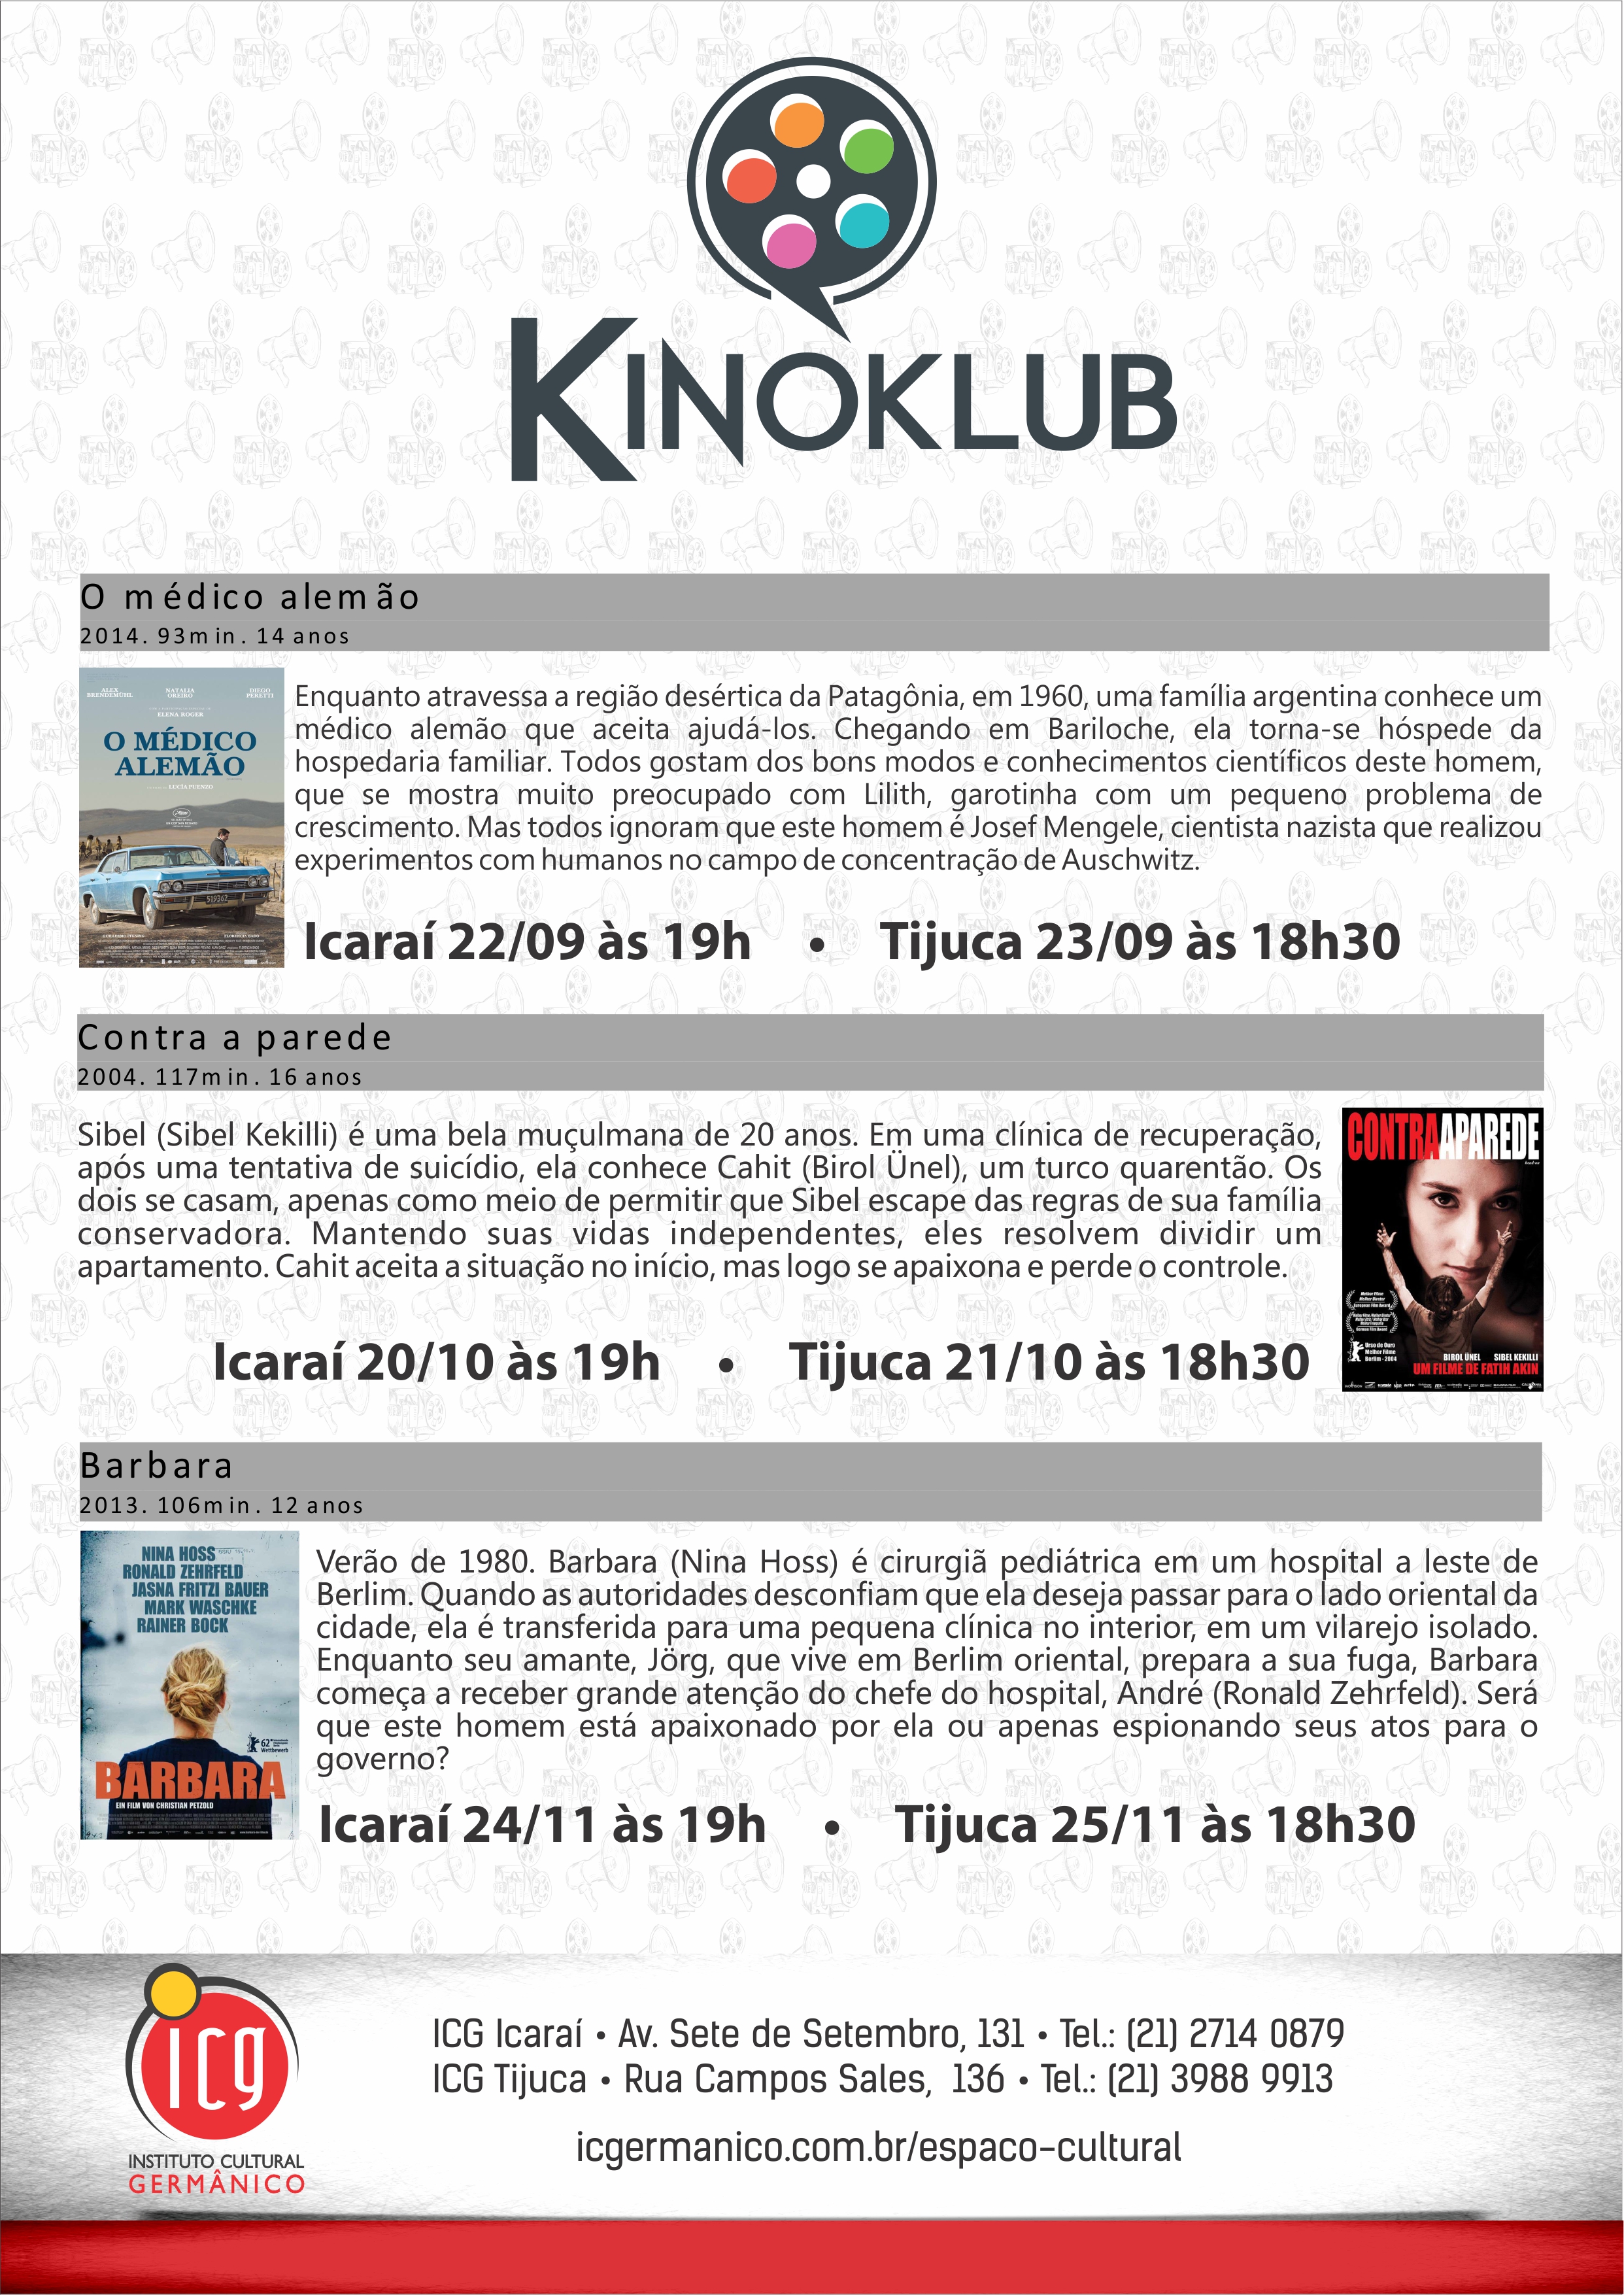 Kinoklub set/out/nov